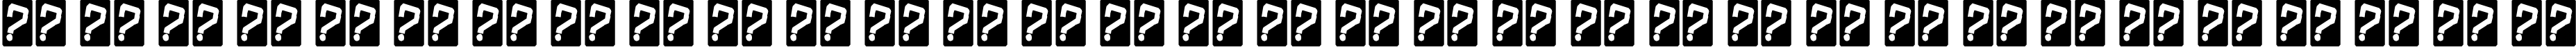 Пример написания русского алфавита шрифтом ChineseRocksRg-Regular